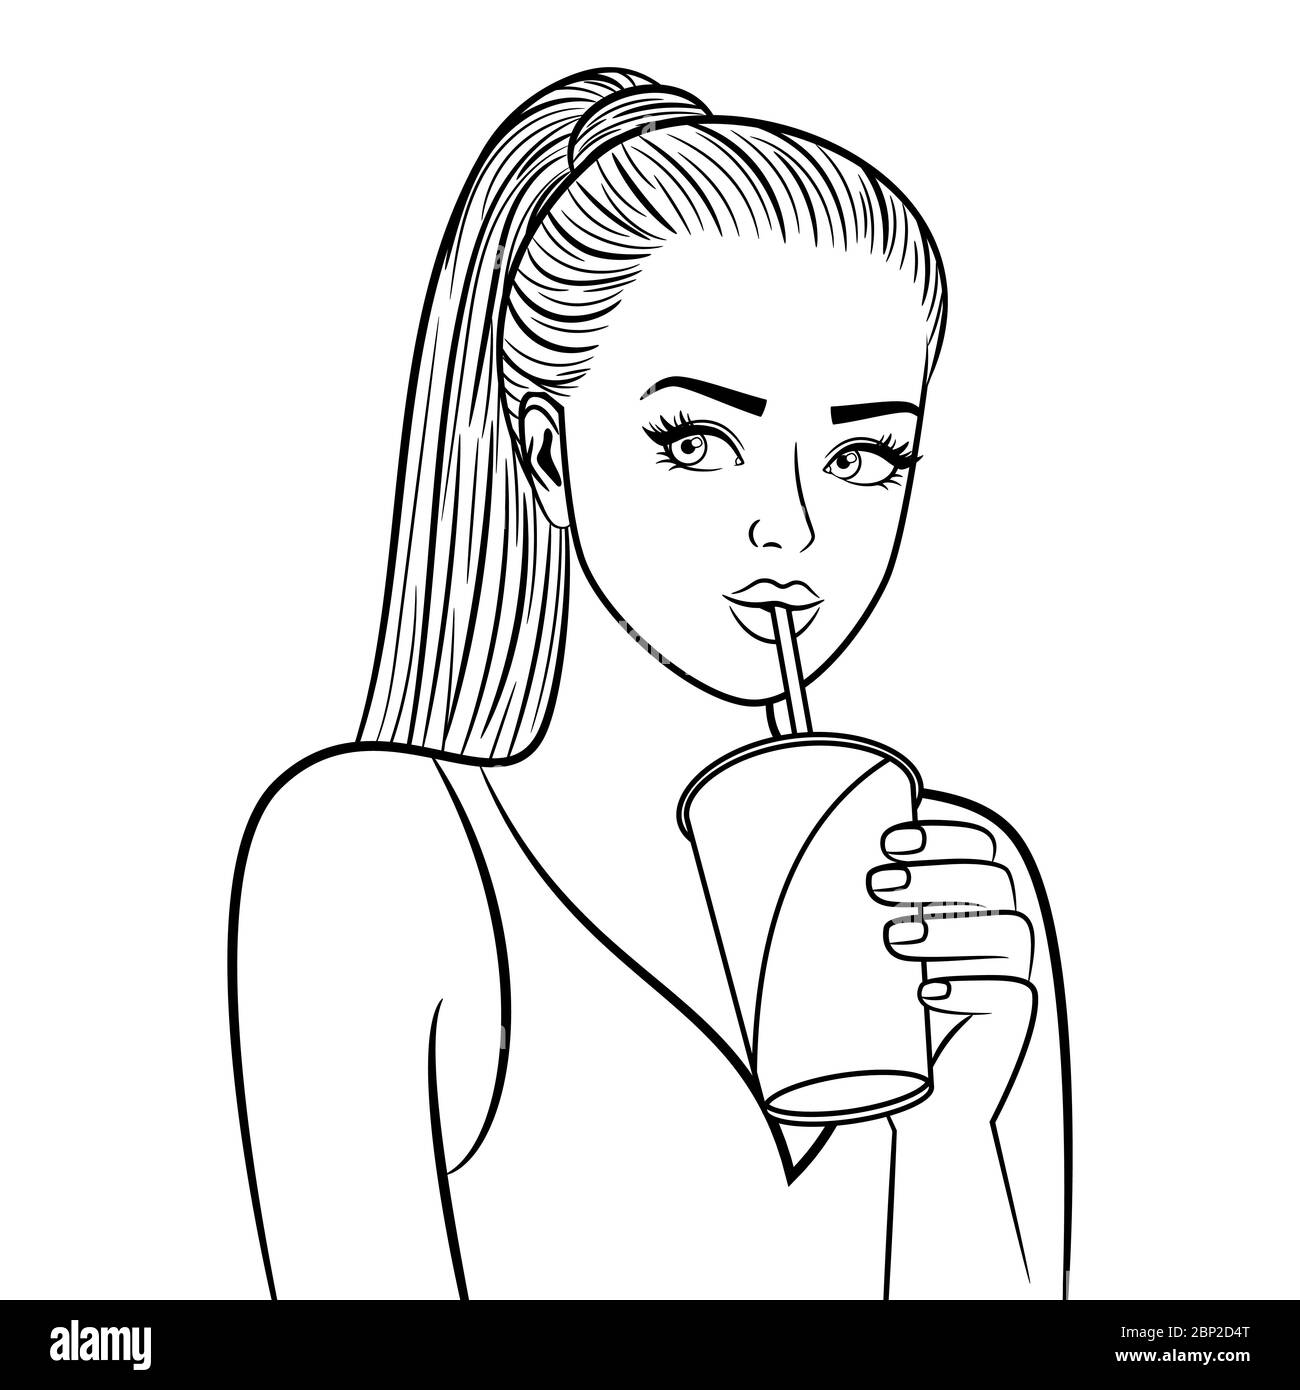 Schwarz-weiß hübsches Mädchen mit Pappbecher. Flirten ziemlich junge Dame  trinken Kaffee Färbung Seite Vektor-Illustration Stock-Vektorgrafik - Alamy